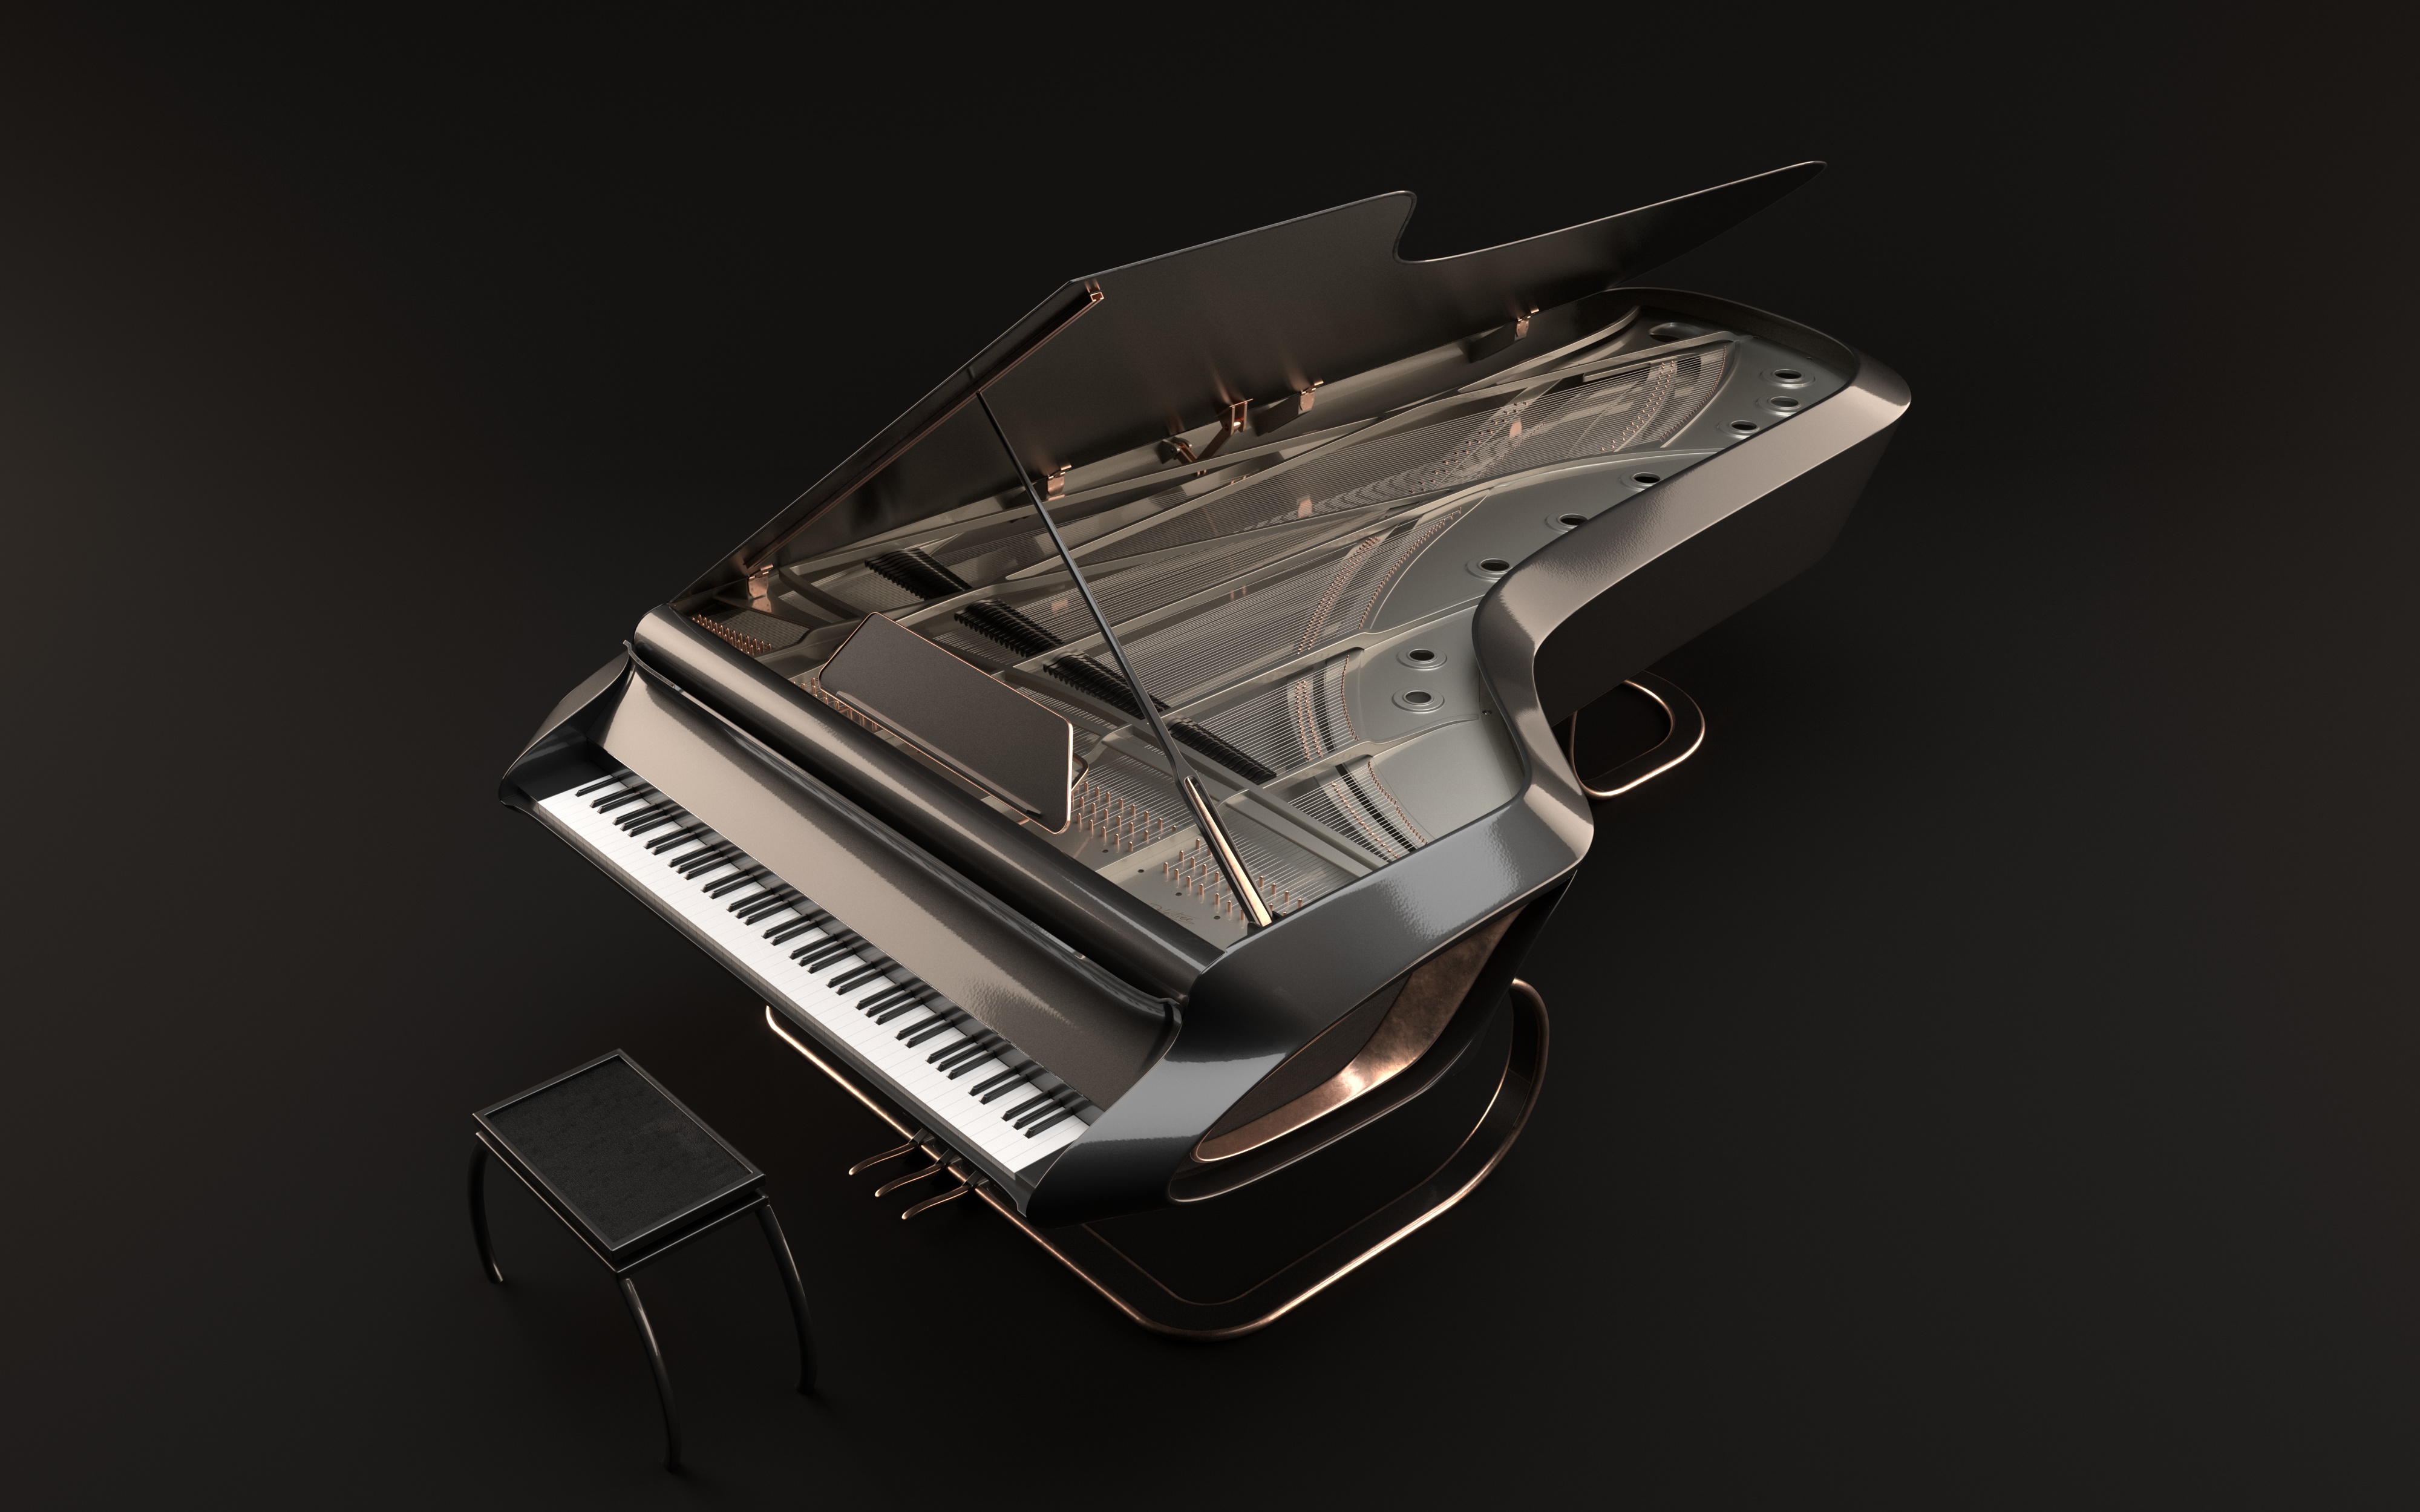 Piano concept - Original design by Johann Delestree on Dribbble